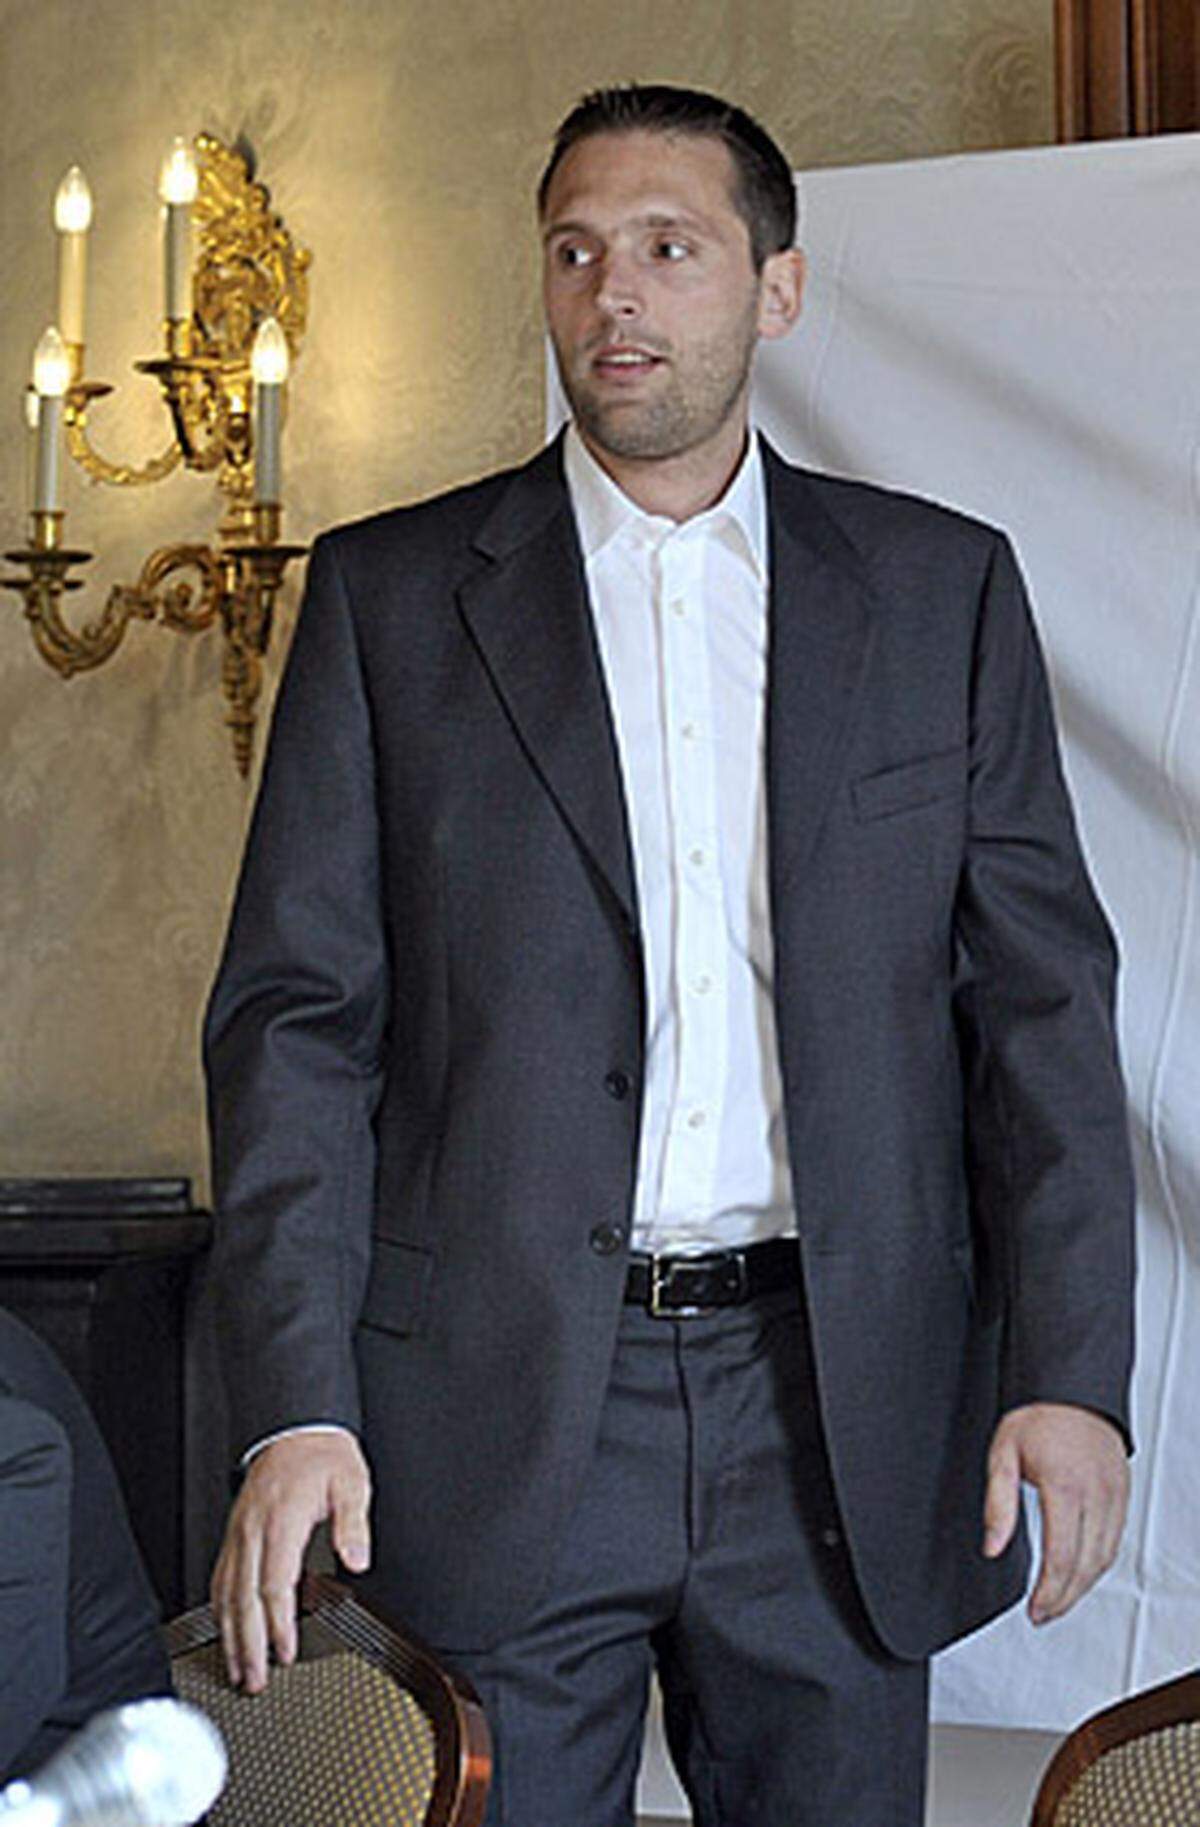 "Aufgrund der nunmehr fehlenden wirtschaftlichen und medialen Notwendigkeit" trennt sich Kohl im Dezember 2008 von seinem Manager Stefan Matschiner.